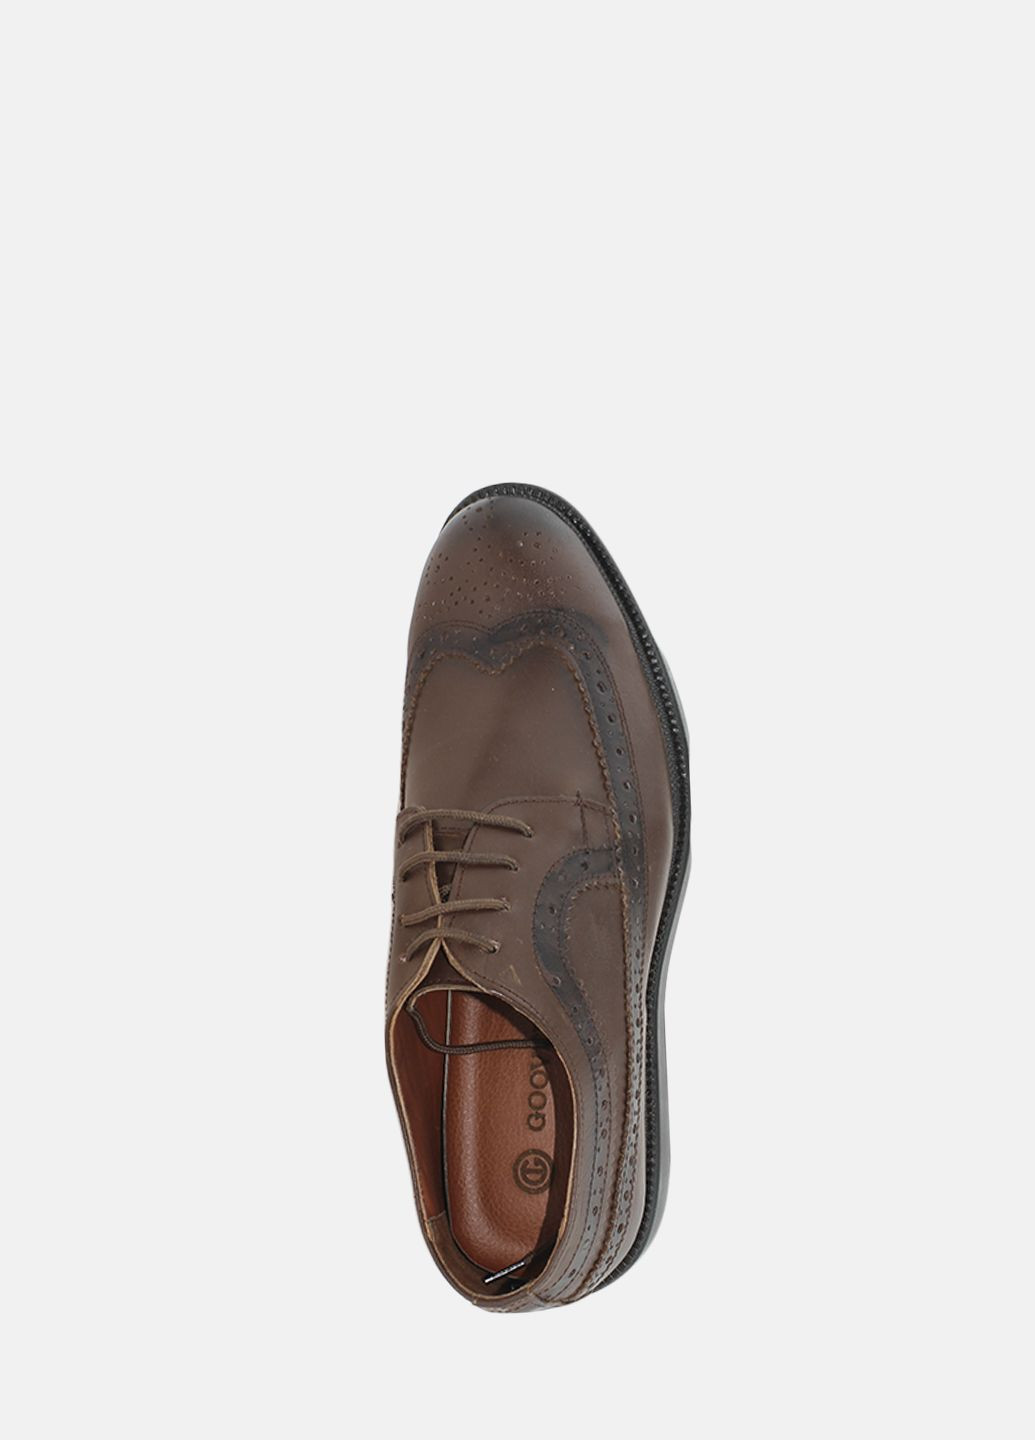 Коричневые туфли g1022.02 коричневый Goover